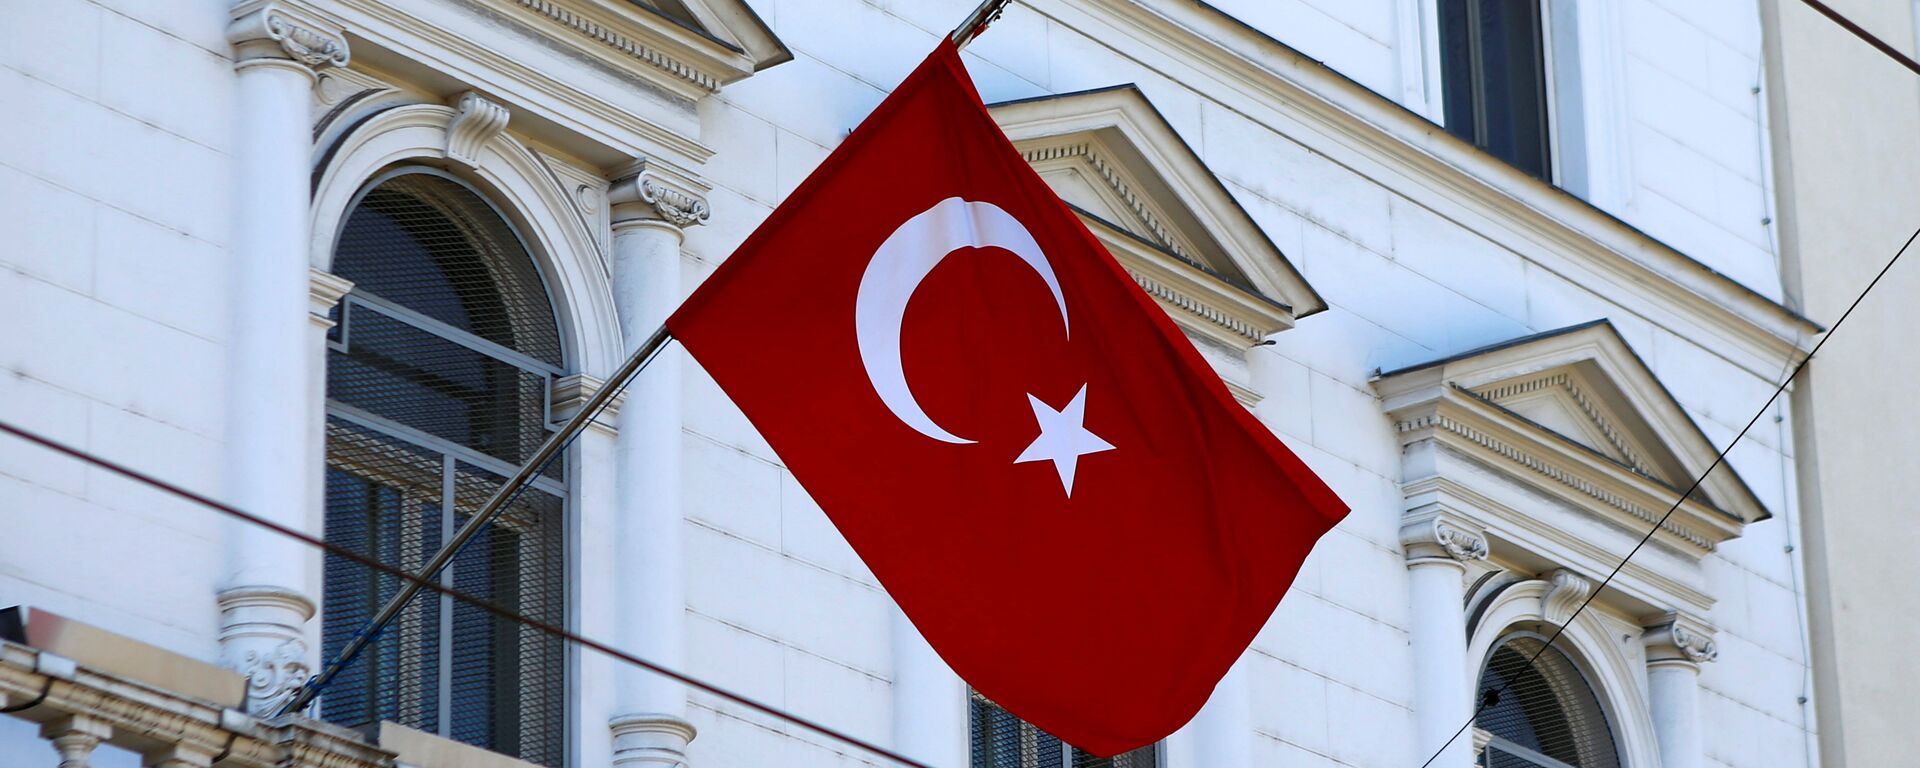 La bandera de Turquía - Sputnik Mundo, 1920, 26.10.2021